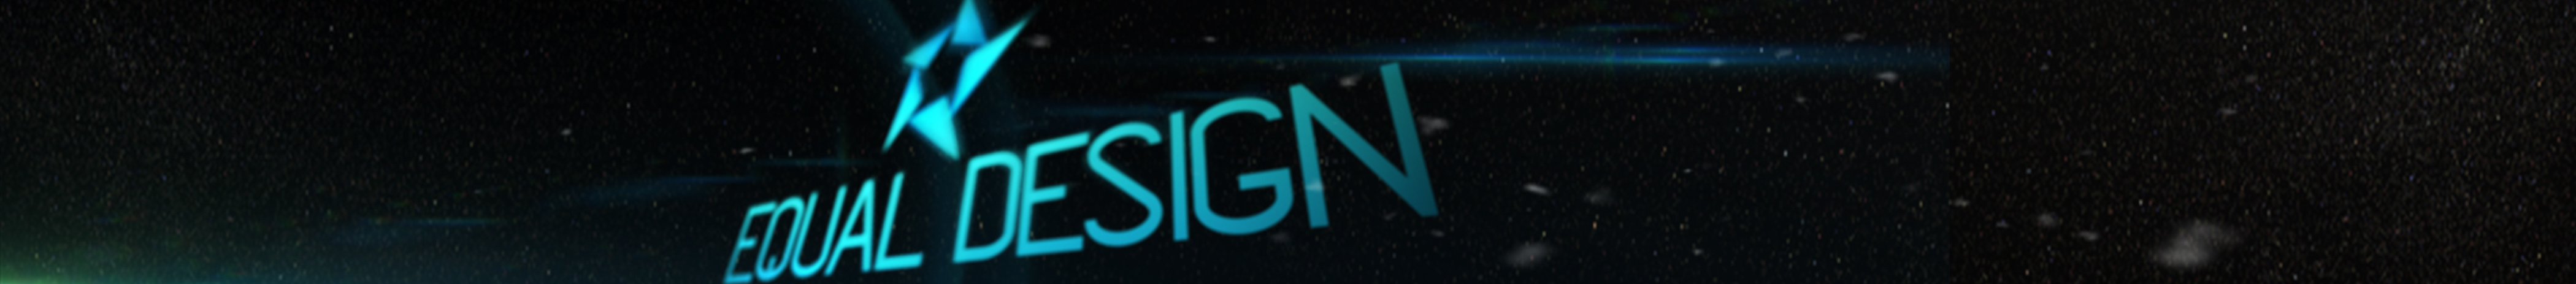 Equal Design's profile banner